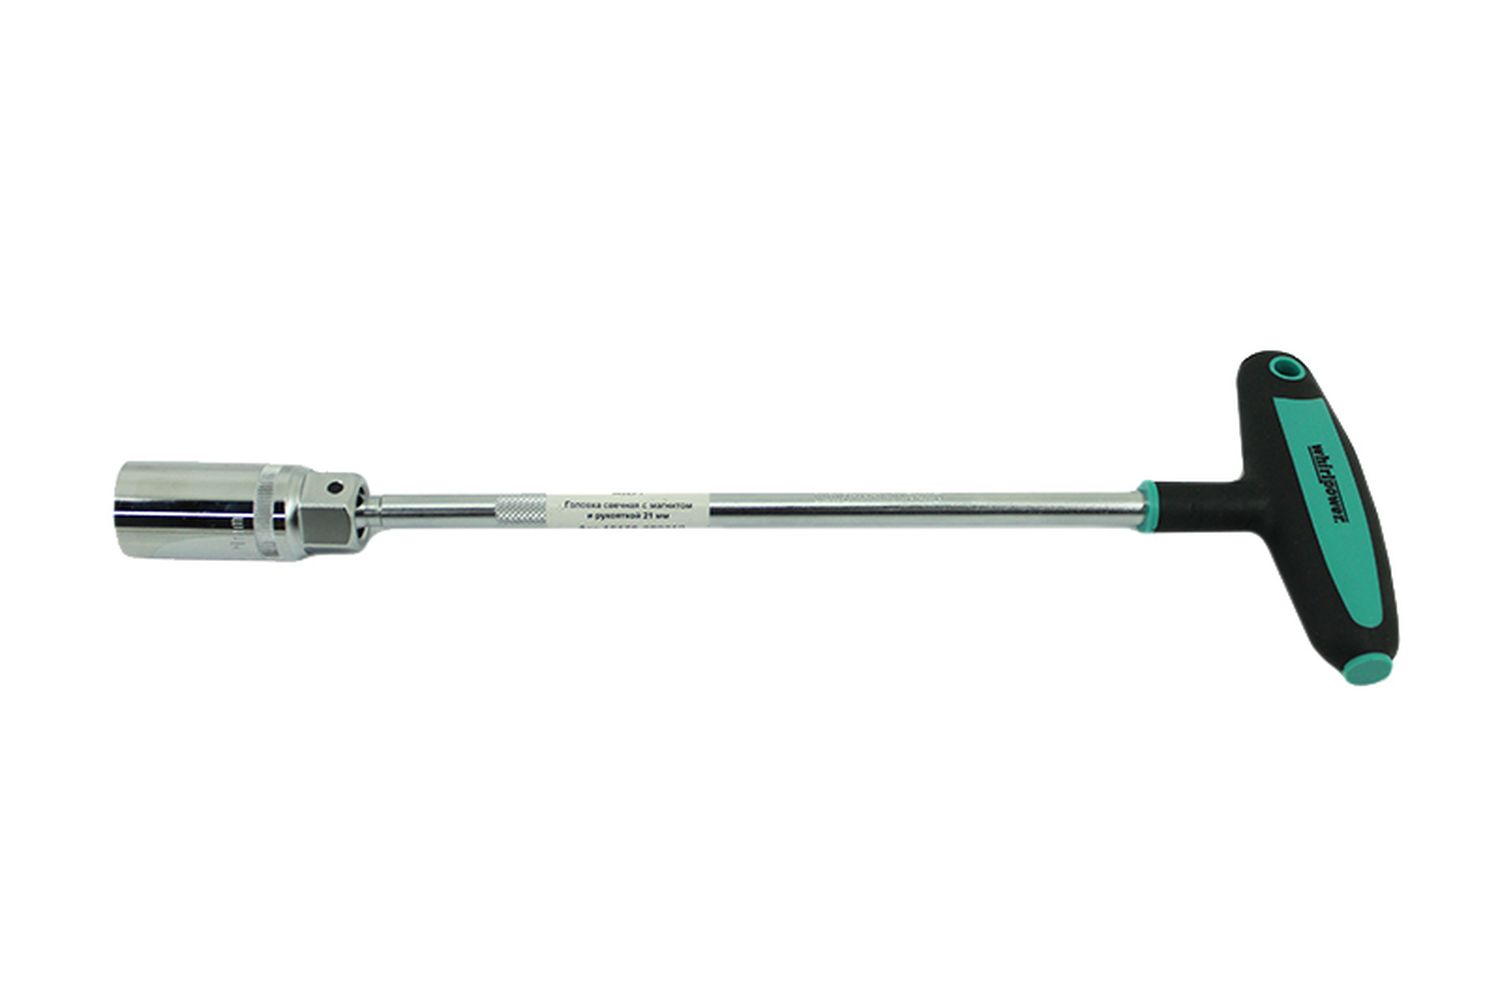 Ключ WhirlPower свечной с магнитом и рукояткой 21мм